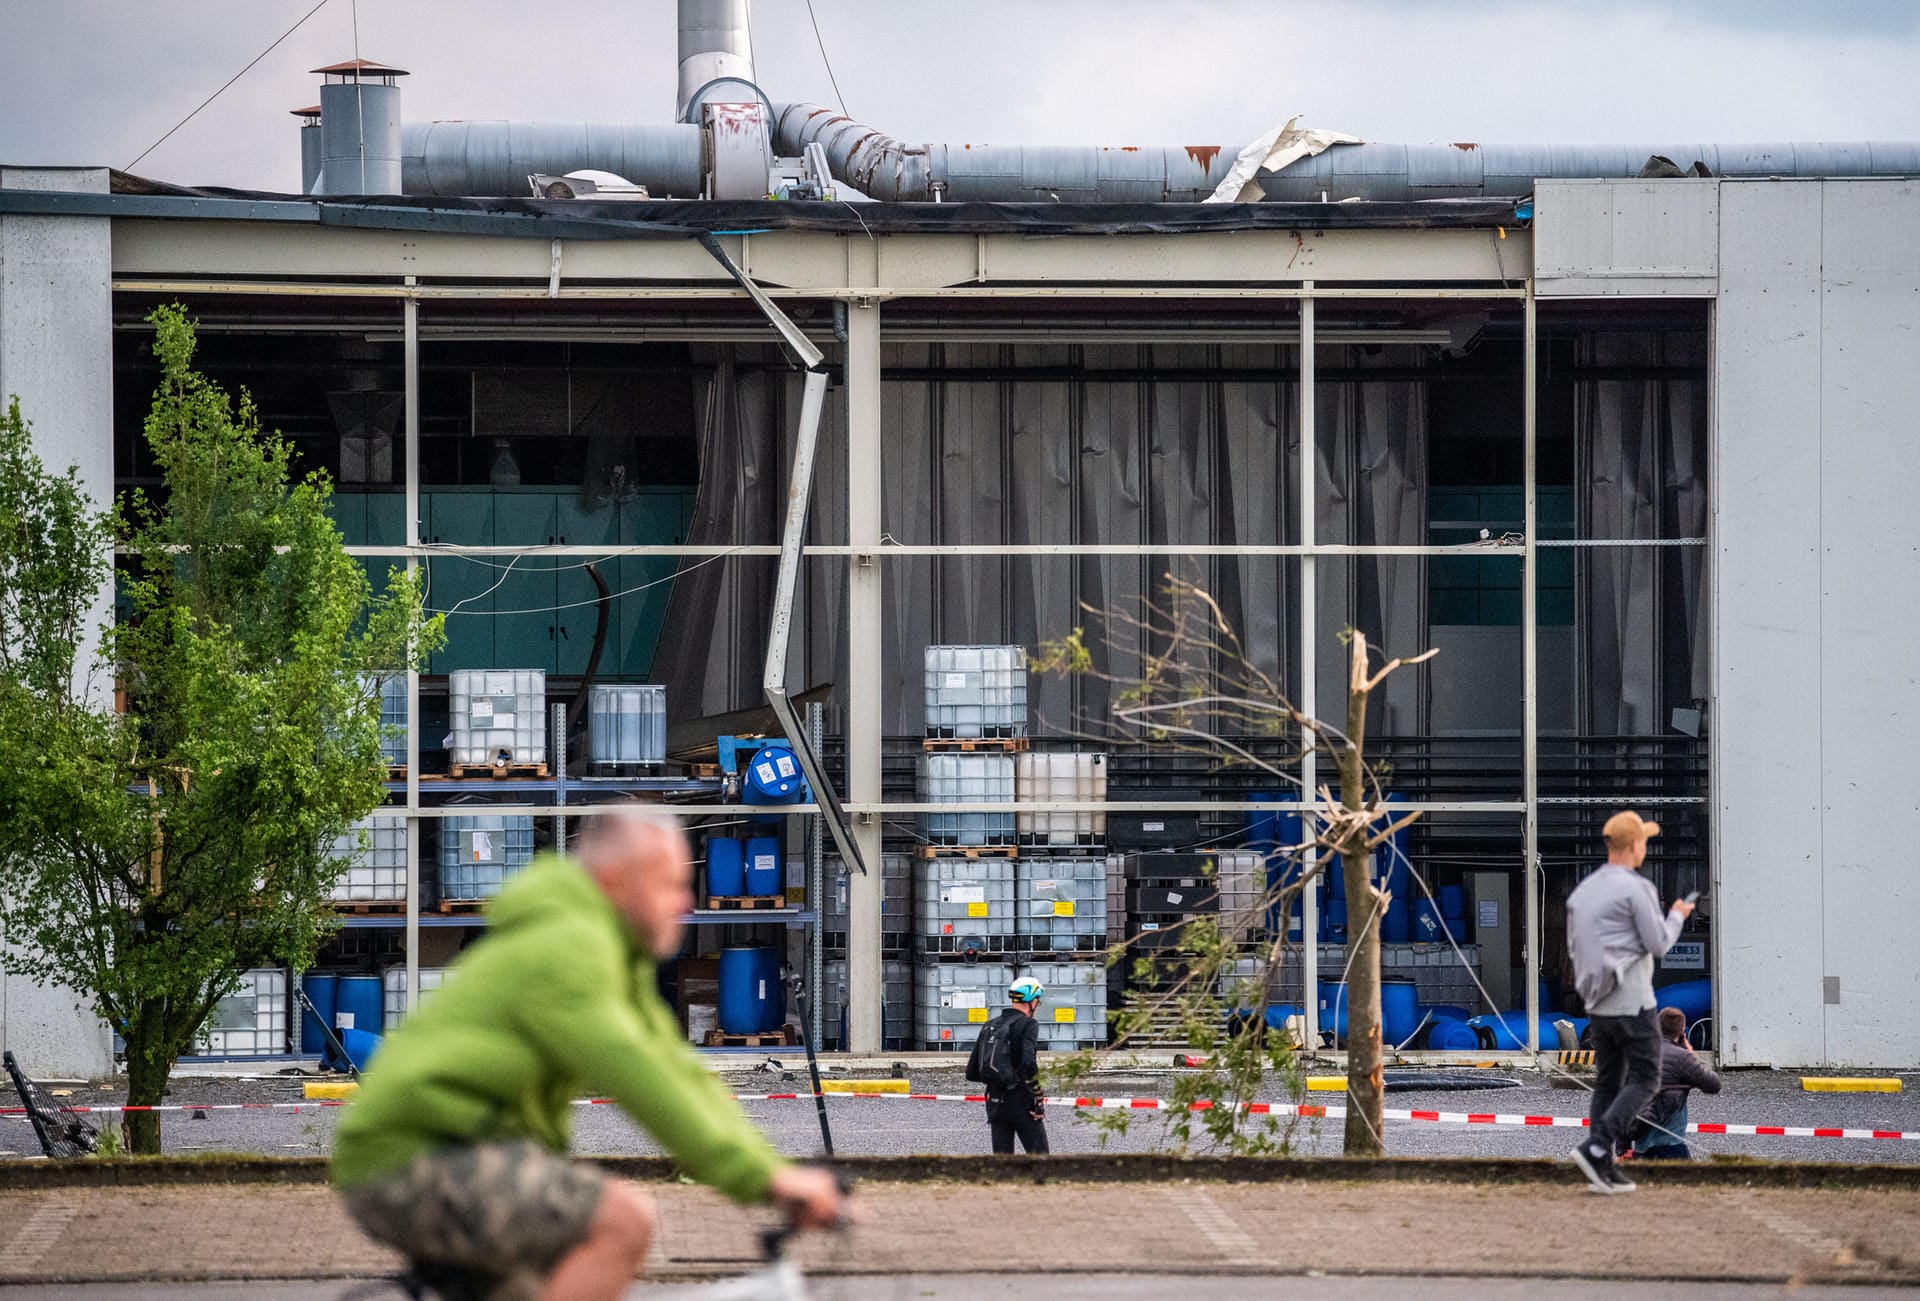 Paderborn: Personen machen Fotos von einer Fabrik, aus der der Sturm eine Wand herausgerissen hat.